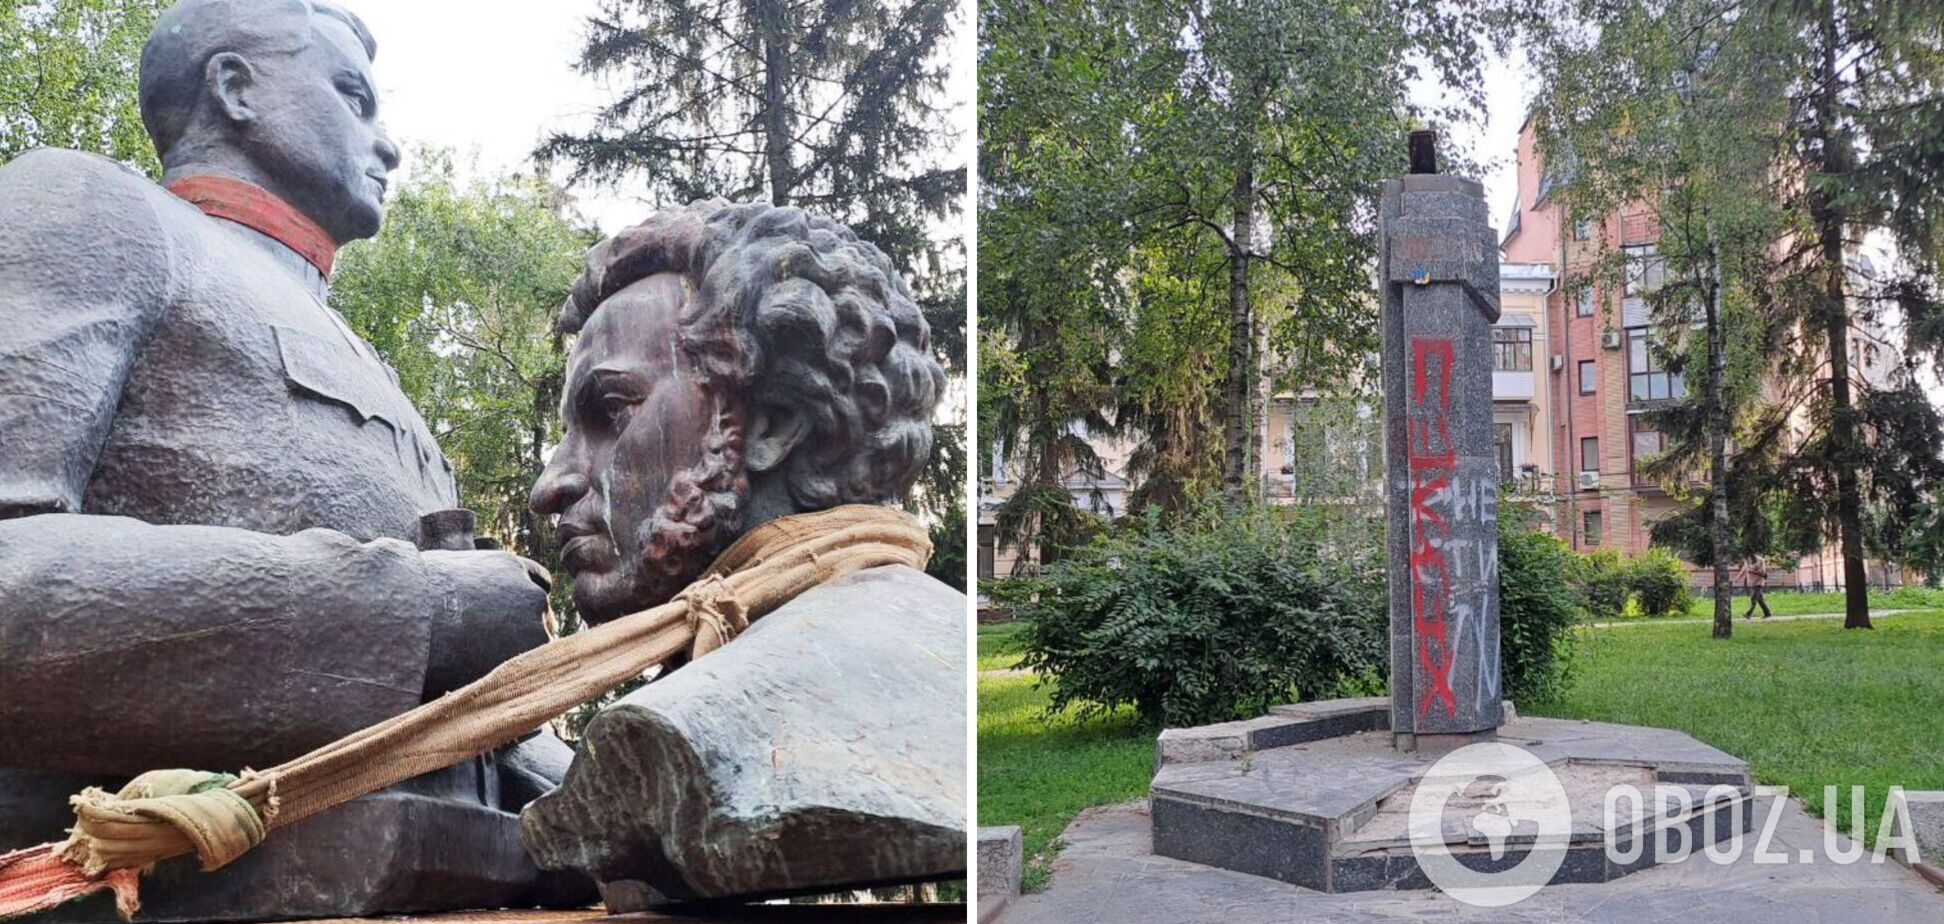 В Полтаве демонтировали памятники Ватутину и Пушкину. Фото и видео